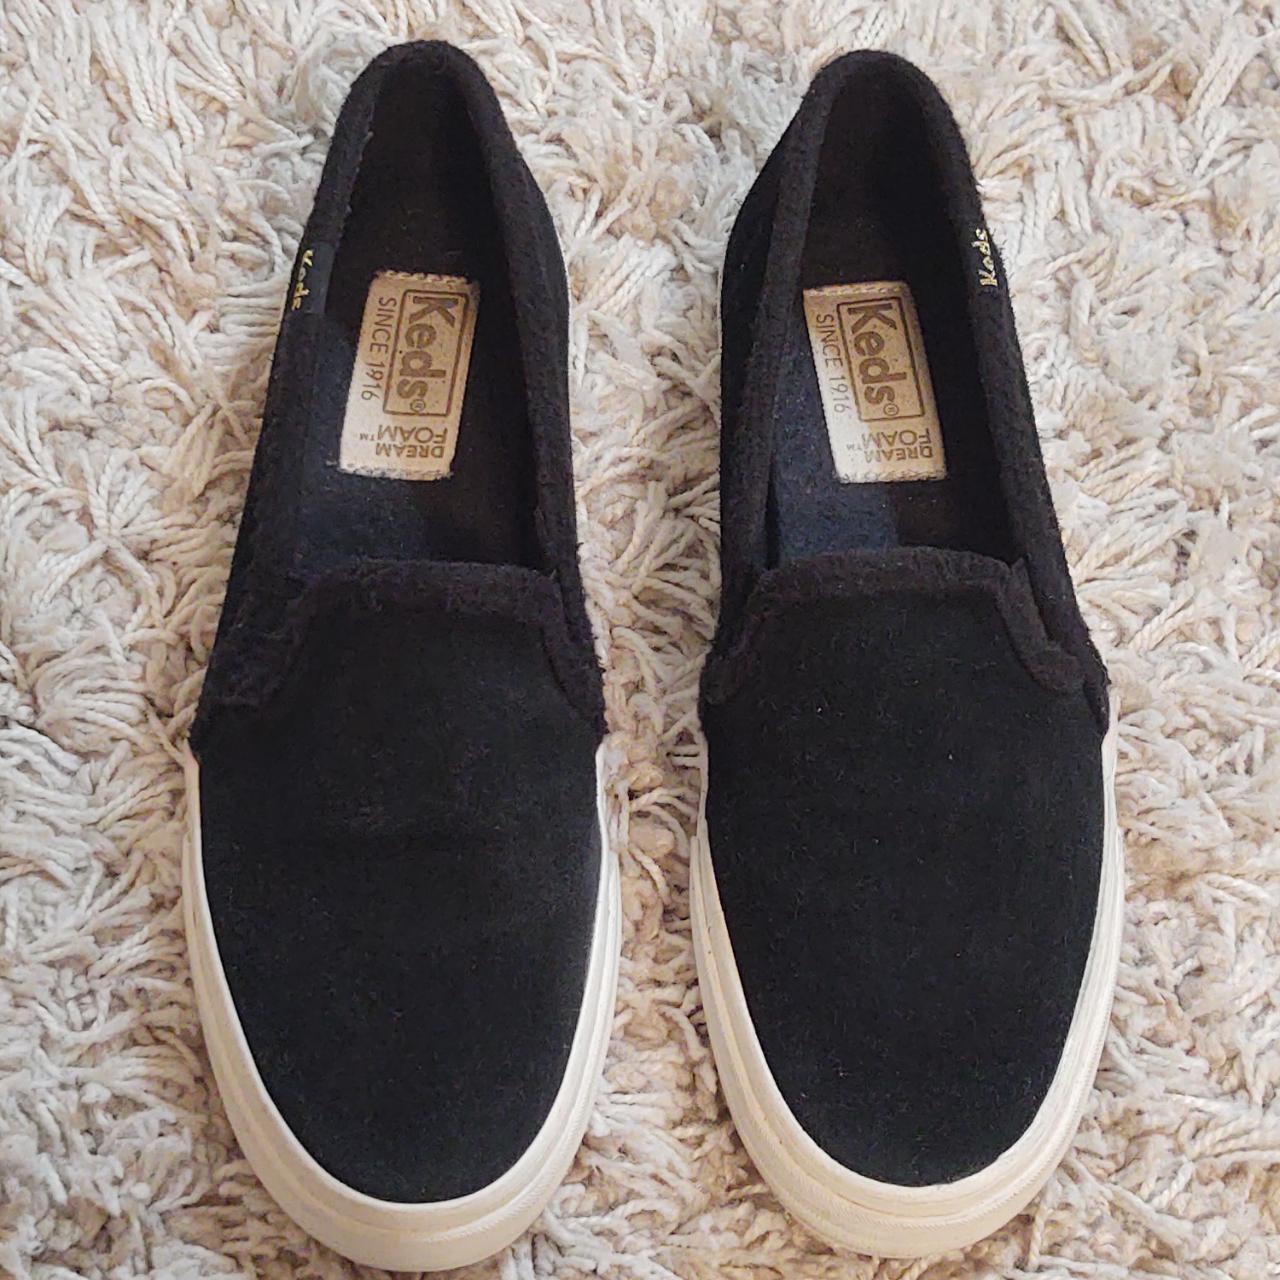 Black, suede boat shoes - Depop